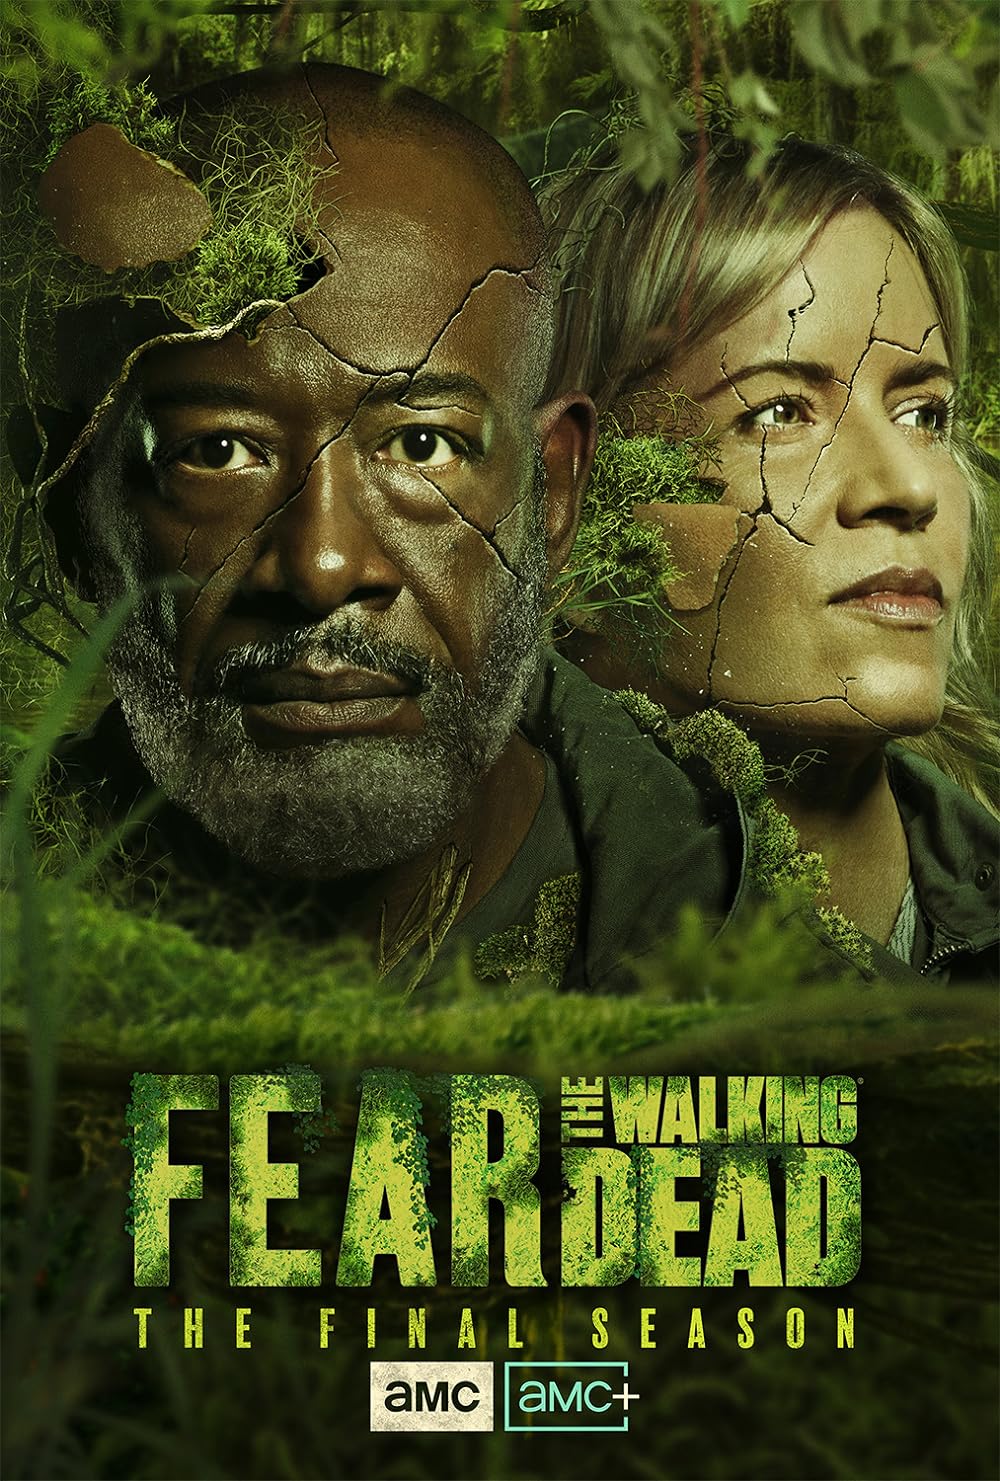 Fear the Walking Dead poster